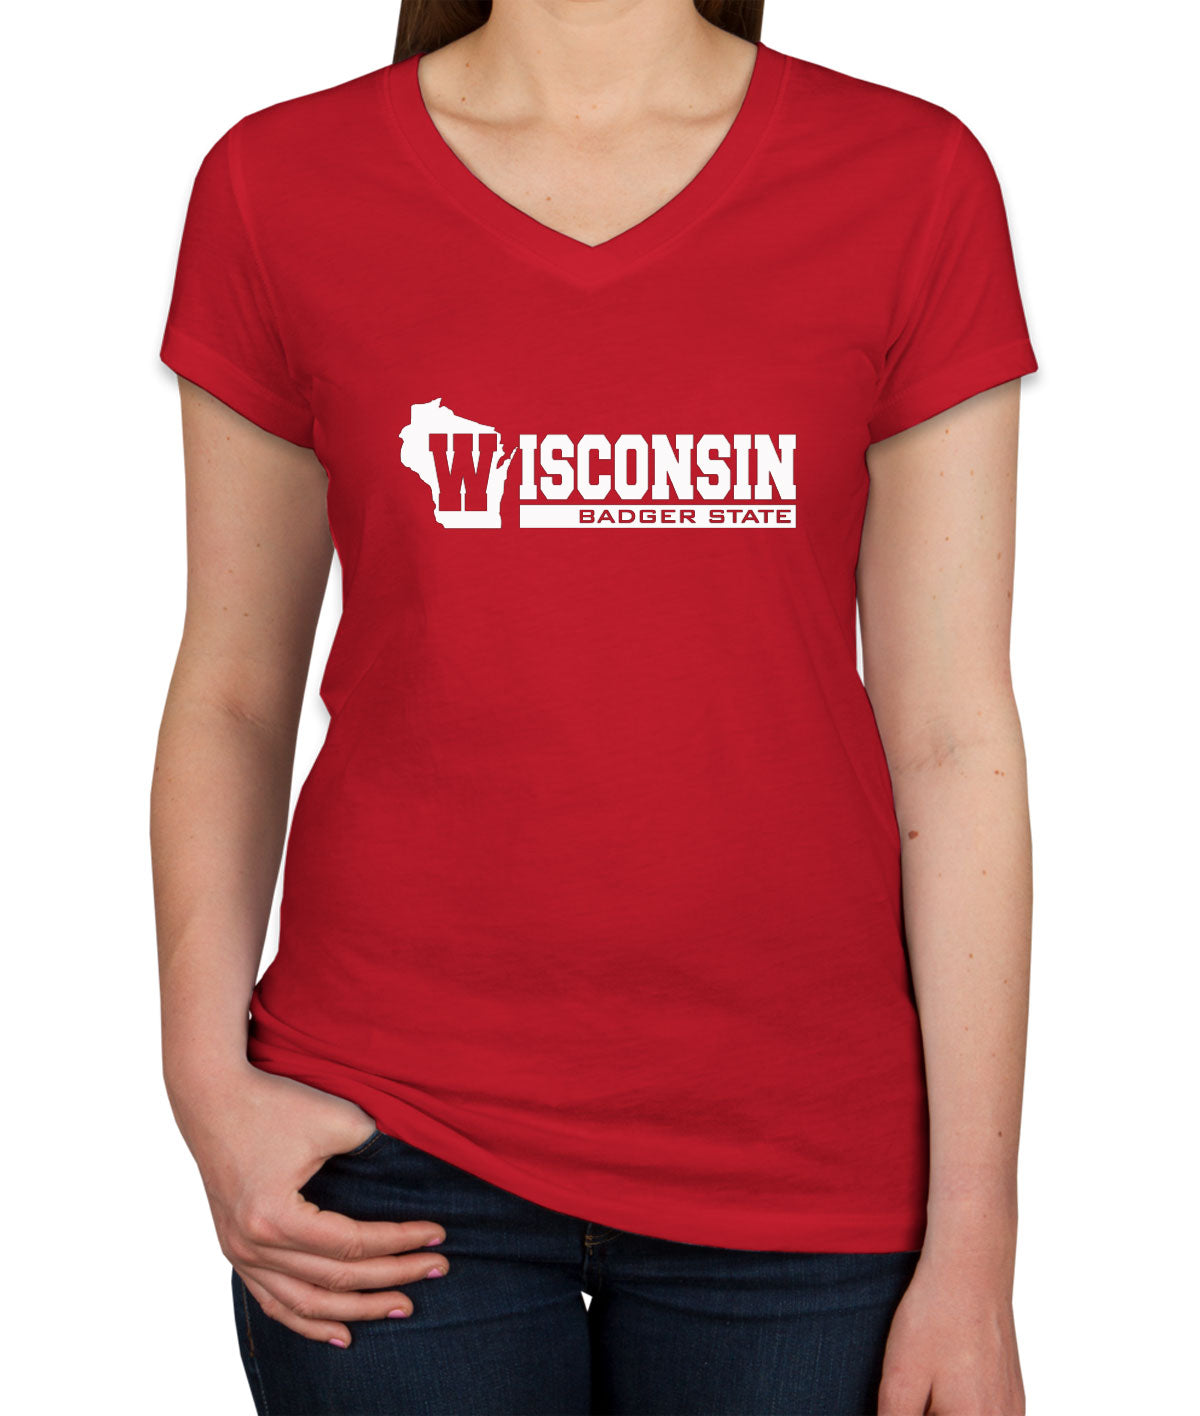 Wisconsin Badger State Women's V Neck T-shirt